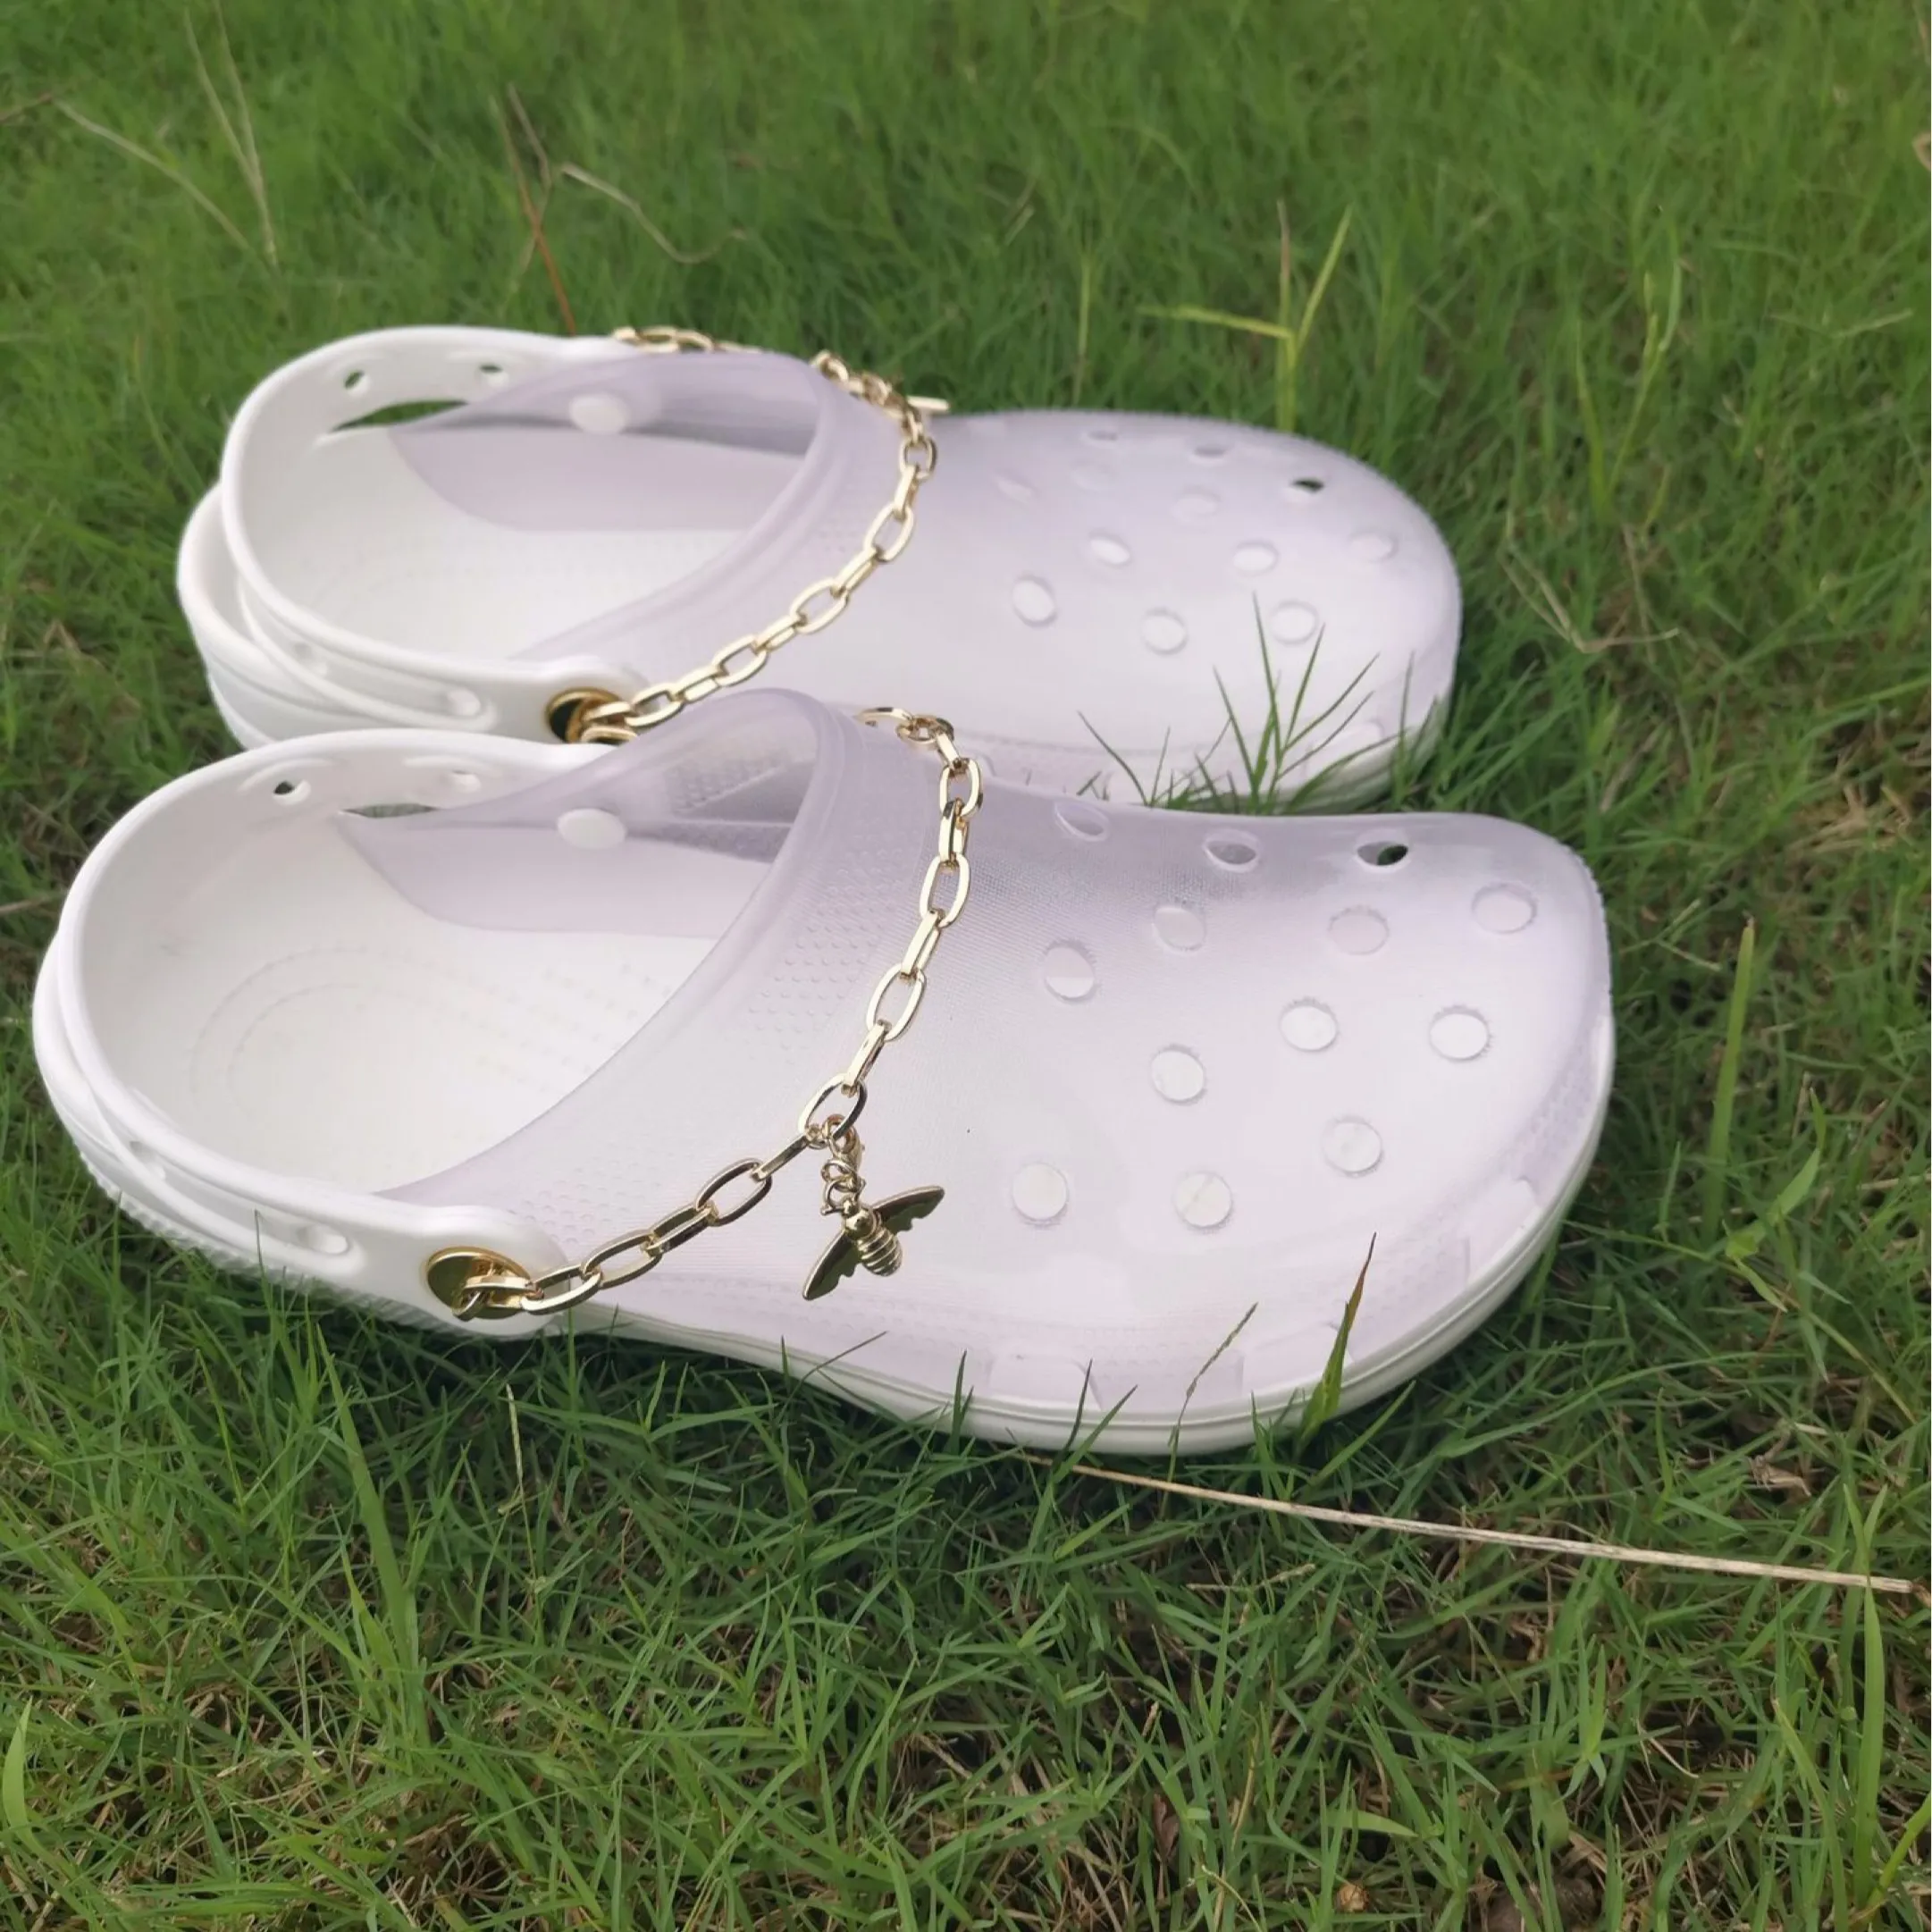 Wholesale Des Sandales Amazon Hot Sale Summer Clear Slide Platform Shoes Jelly Women Clog sandalias